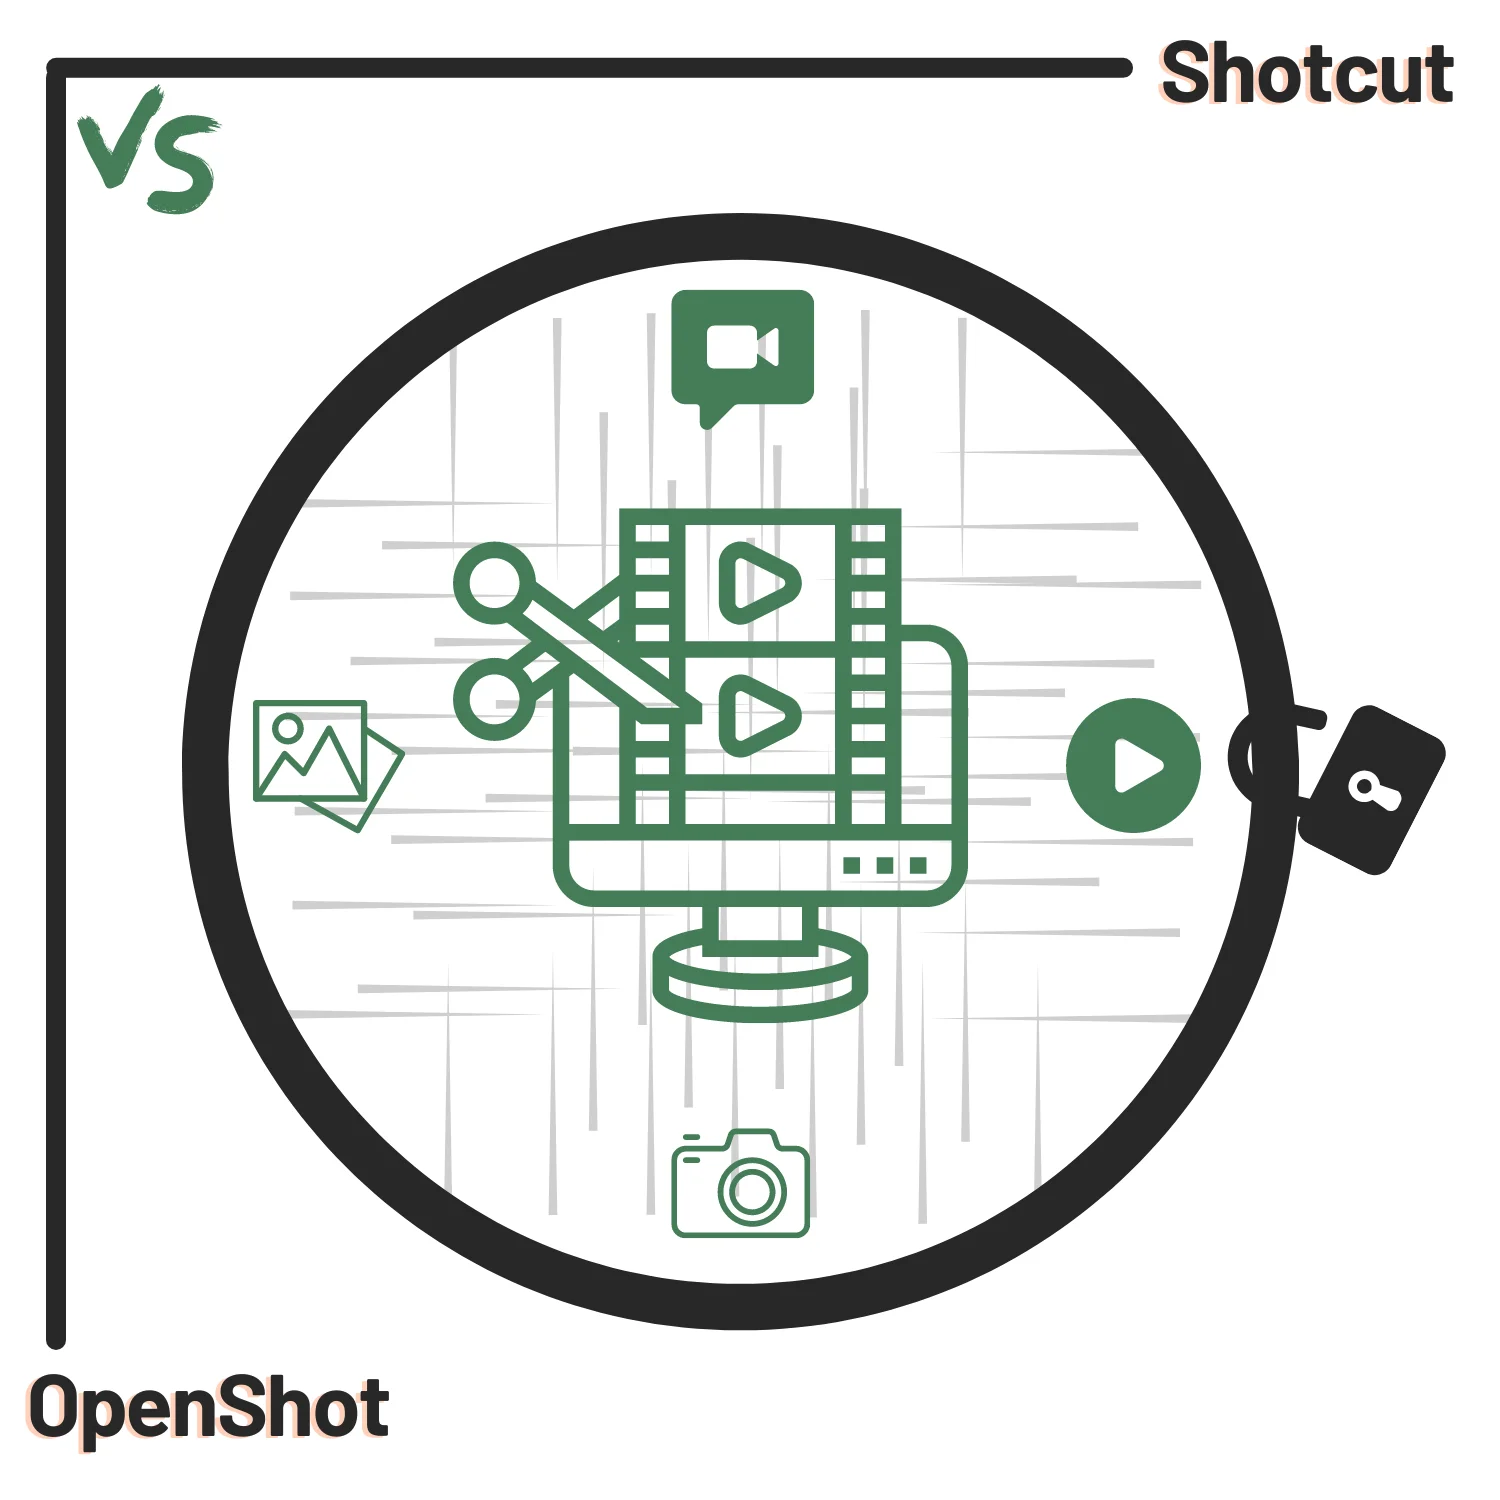 Shotcut vs. OpenShot